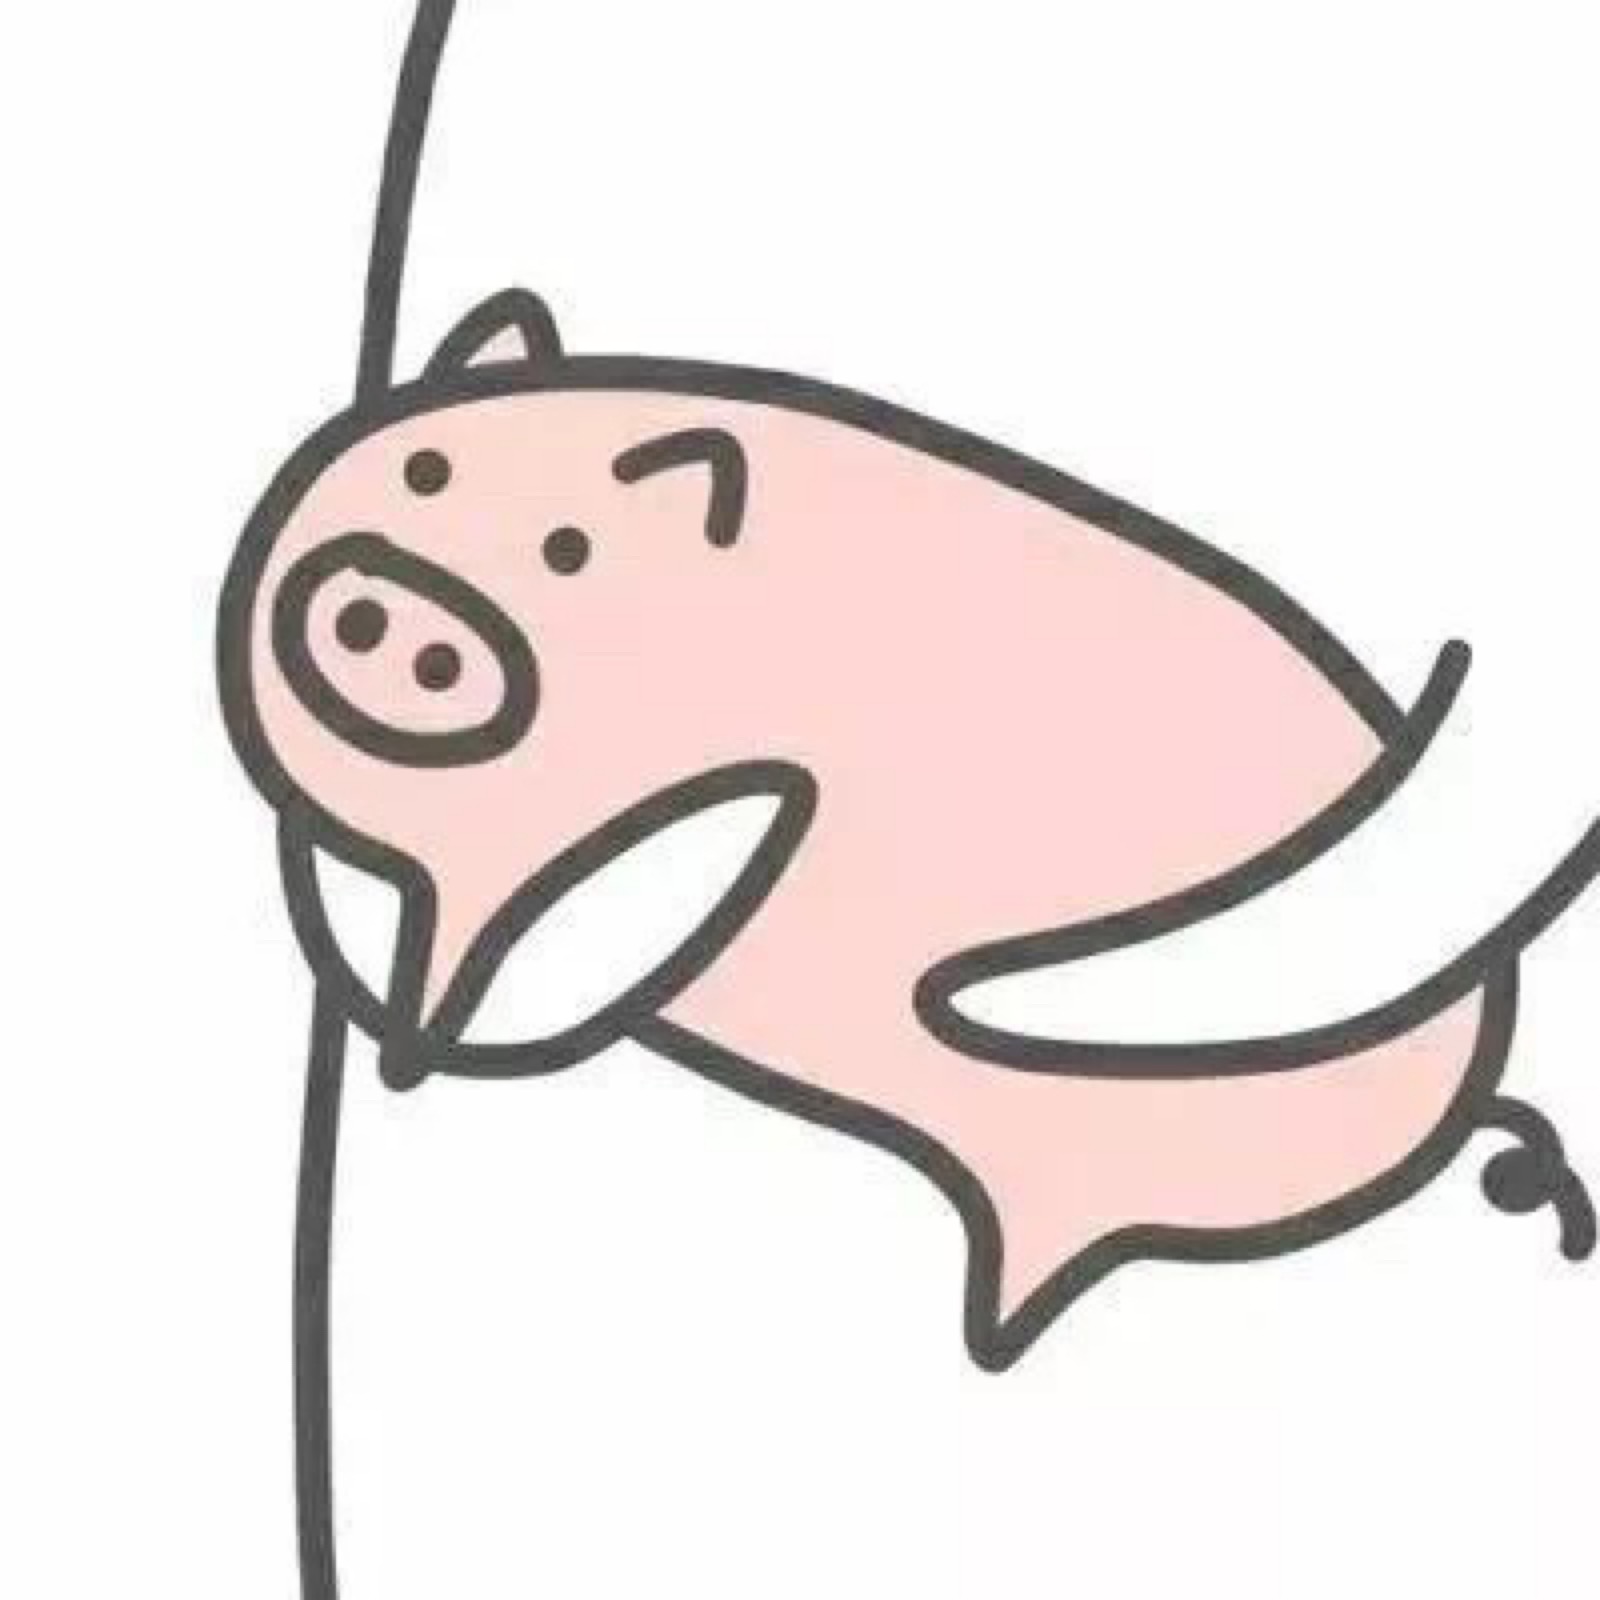 可爱猪图片_动漫卡通_插画绘画-图行天下素材网